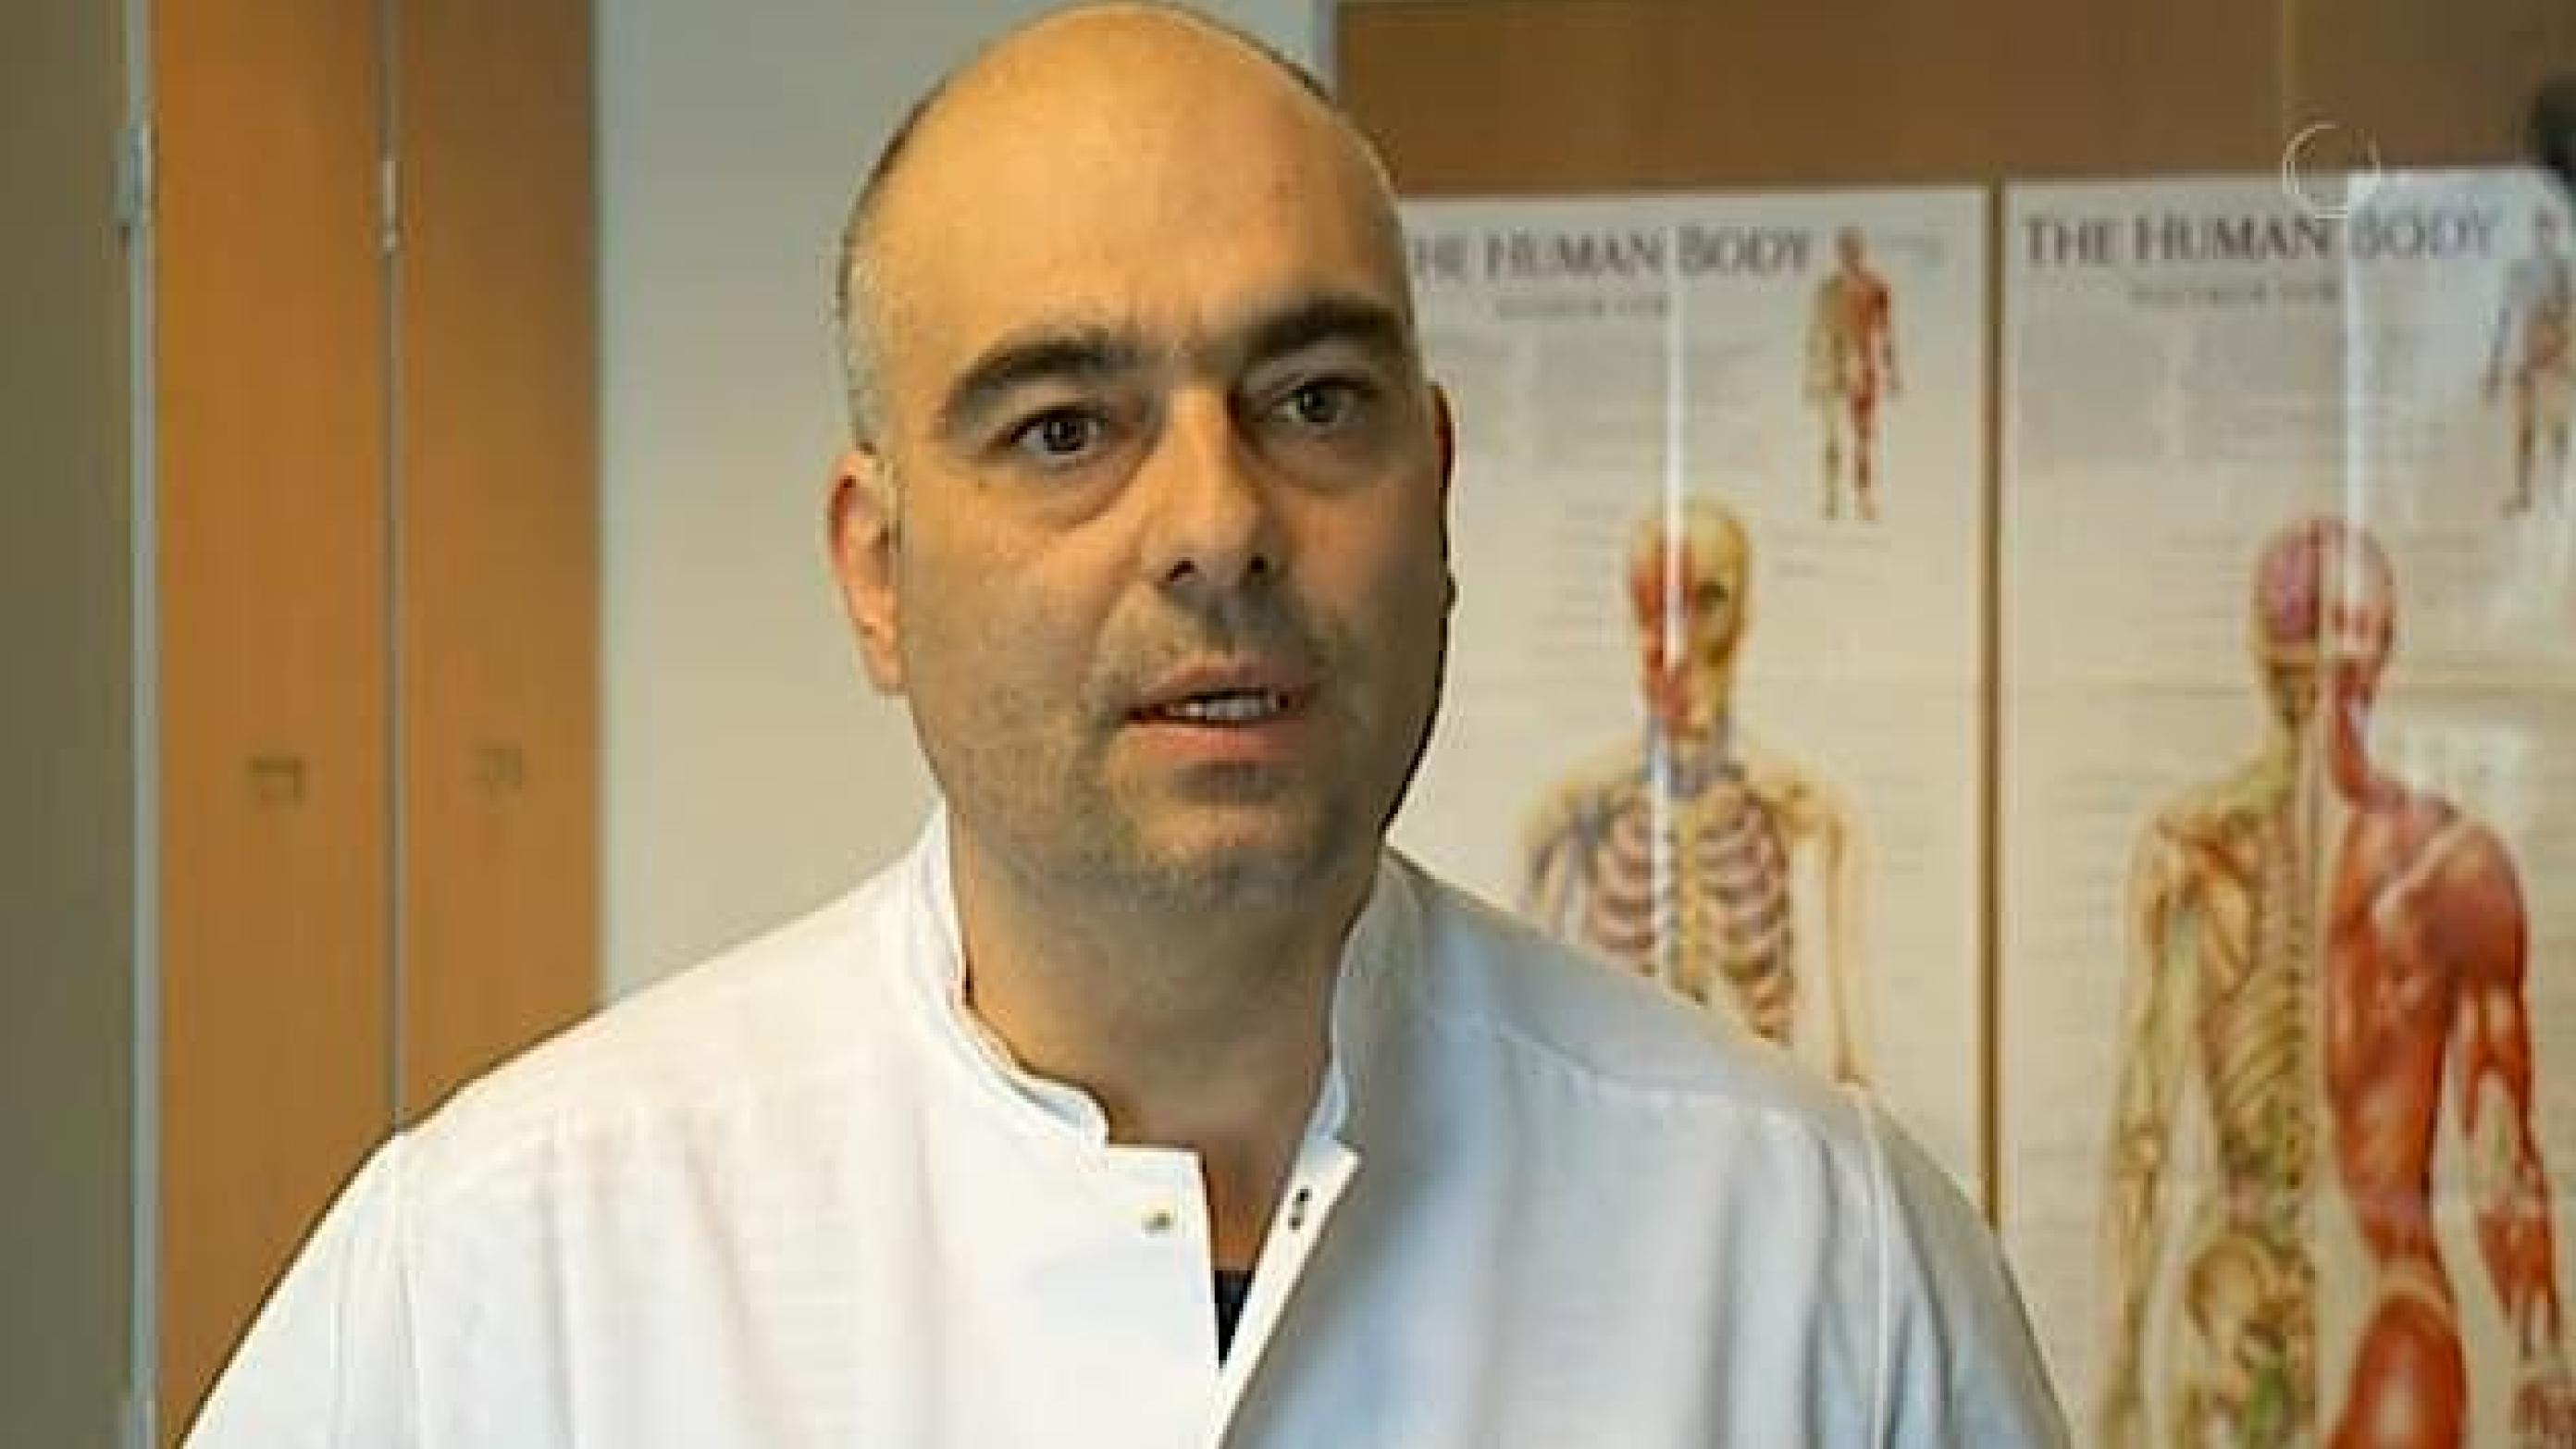 Speciallæge Shanin Gaini har forladt den danske speciallægevirkelighed, der efter hans mening drukner i bureaukrati og drænes for lægefaglighed - og har genfundet fagligheden på Færøerne.